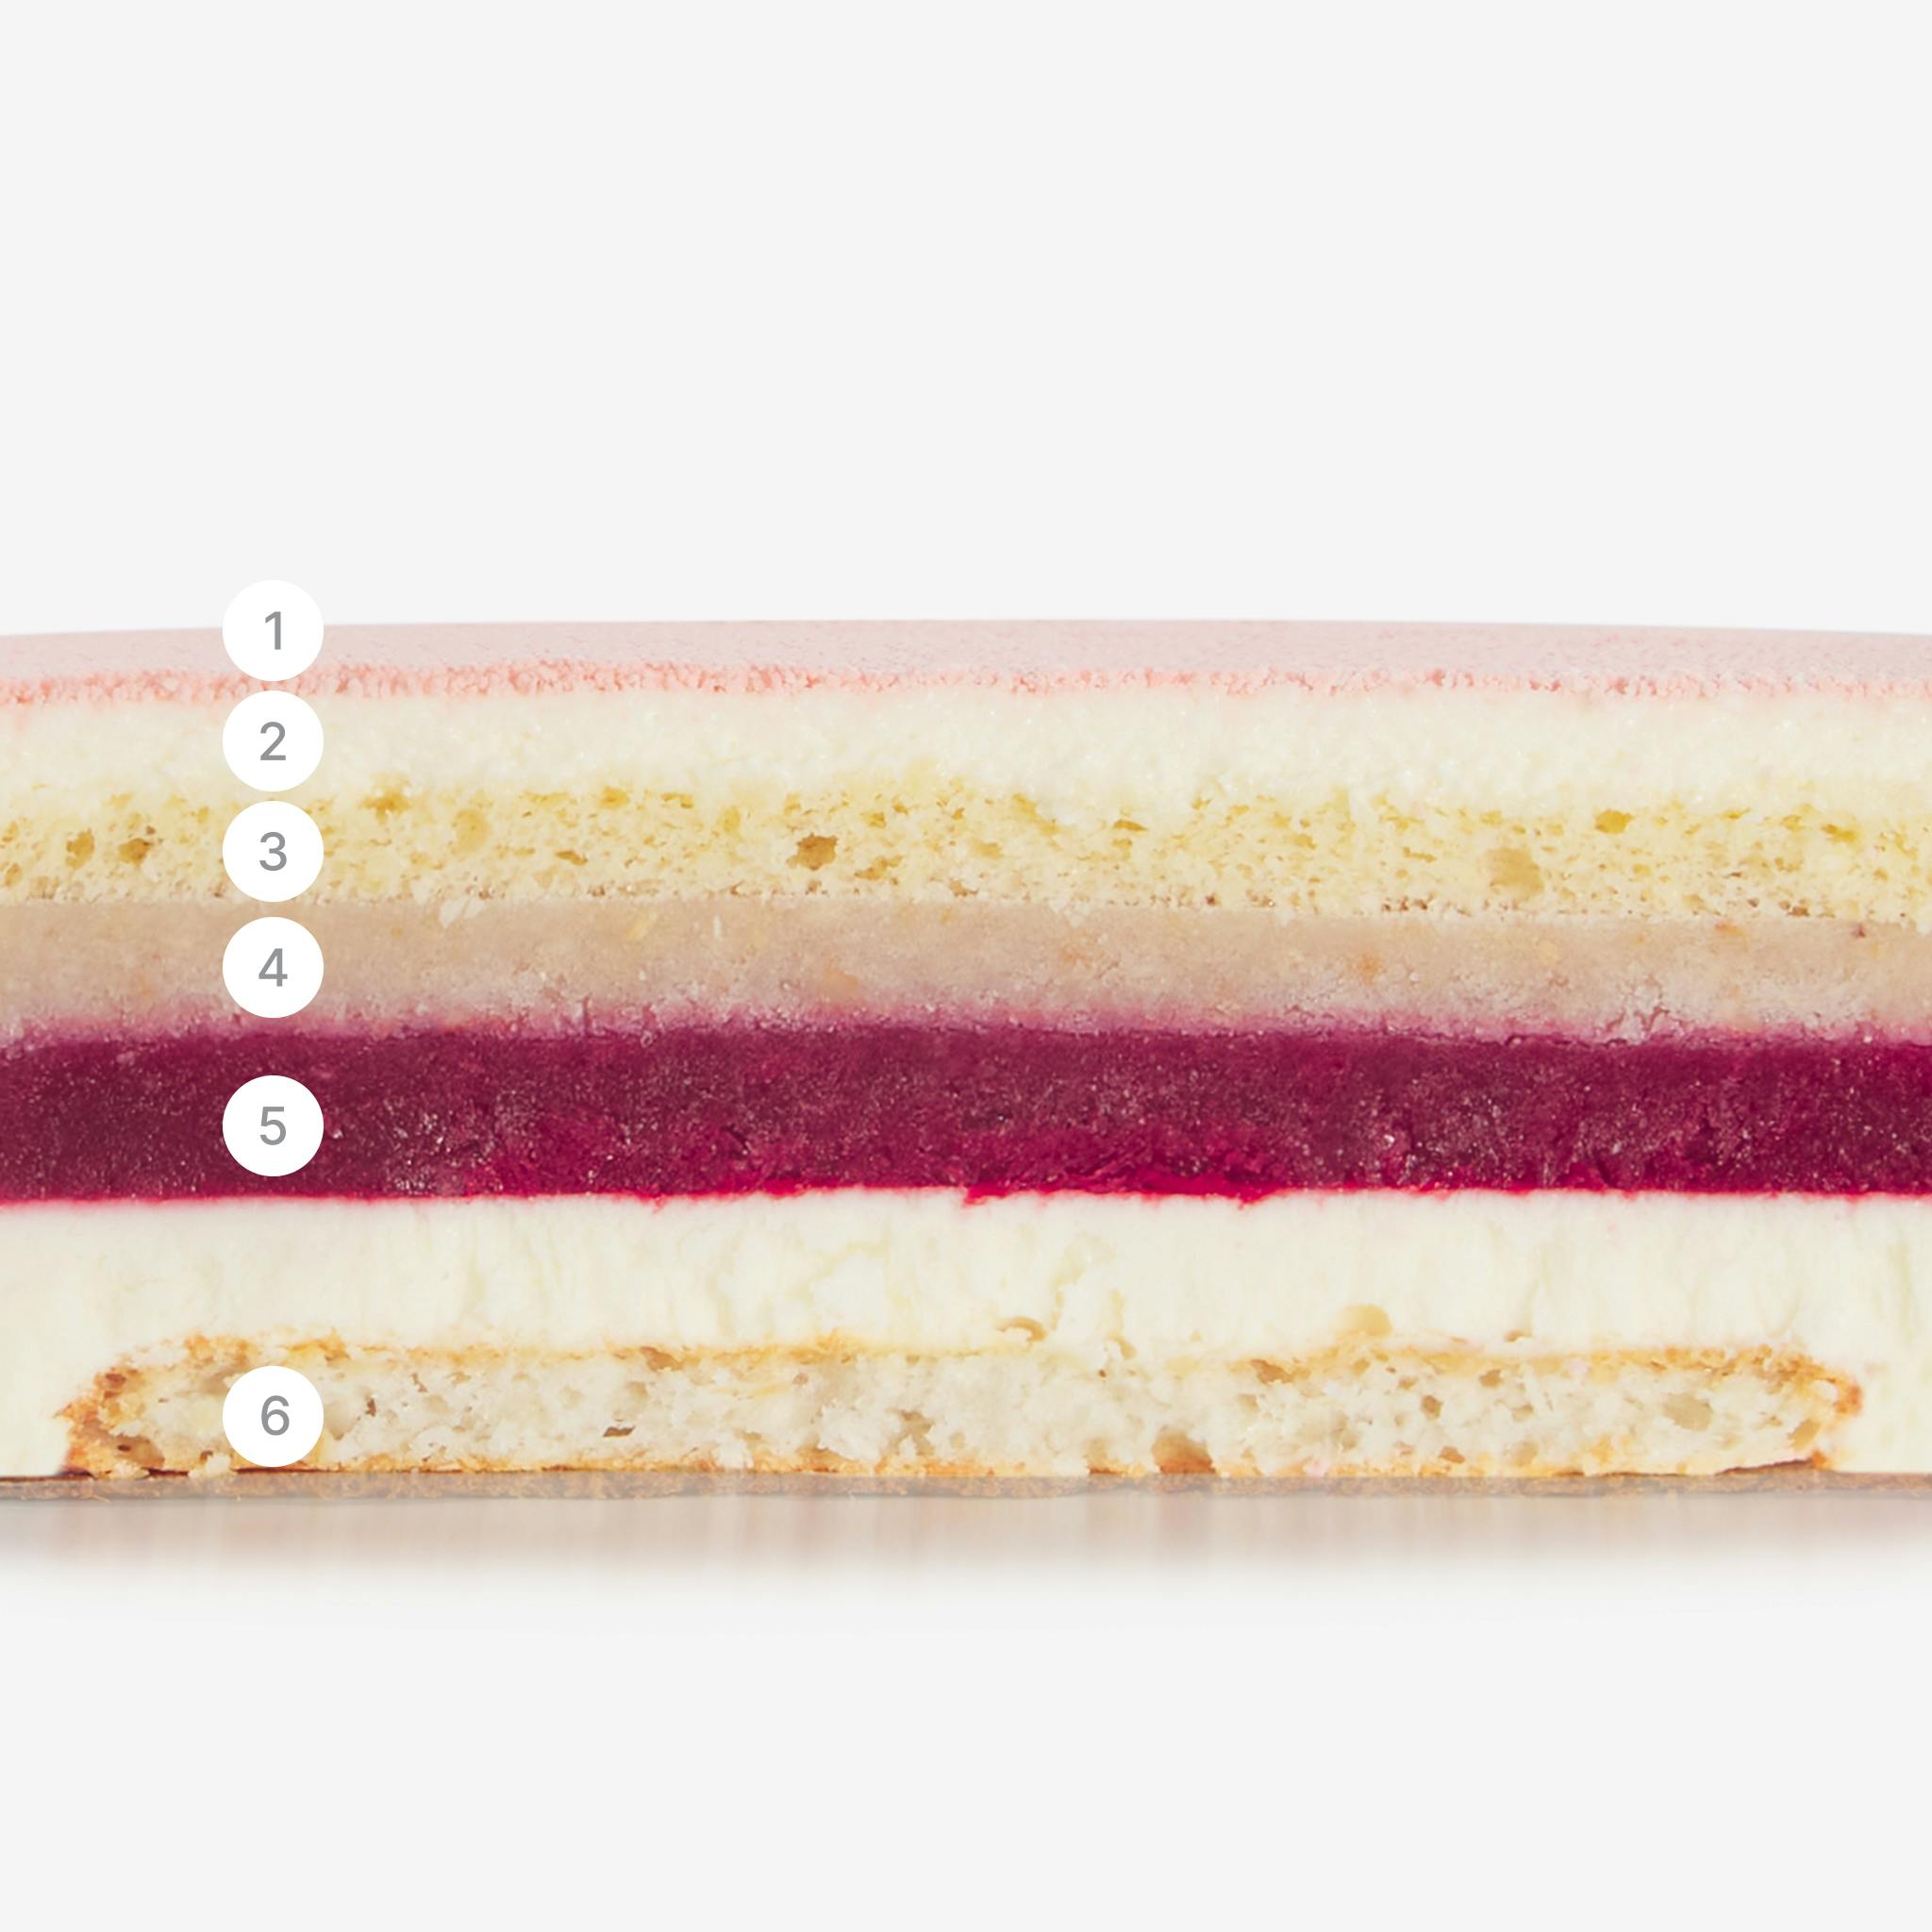 LaFuong Pastry – Lycoberry – Vải, Phúc bồn tử & Dừa. Mang đến một sự cân bằng tuyệt vời giữa vị chua nhẹ, ngọt thanh và thơm ngậy trong cùng một miếng bánh bằng cách sử dụng vải, dừa và phúc bồn tử. Không chỉ đặc biệt trong hương vị, lớp bạt bánh của Lycoberry cũng có hai kết cấu khác nhau: cảm giác mềm xốp đến từ lớp Sponge dừa và một chút độ giòn của sợi dừa tươi nằm trong lớp bạt Dacquoise. Hãy thử Lycoberry khi bạn muốn trải nghiệm hương vị cao cấp mà không cần đợi đến dịp đặc biệt. 